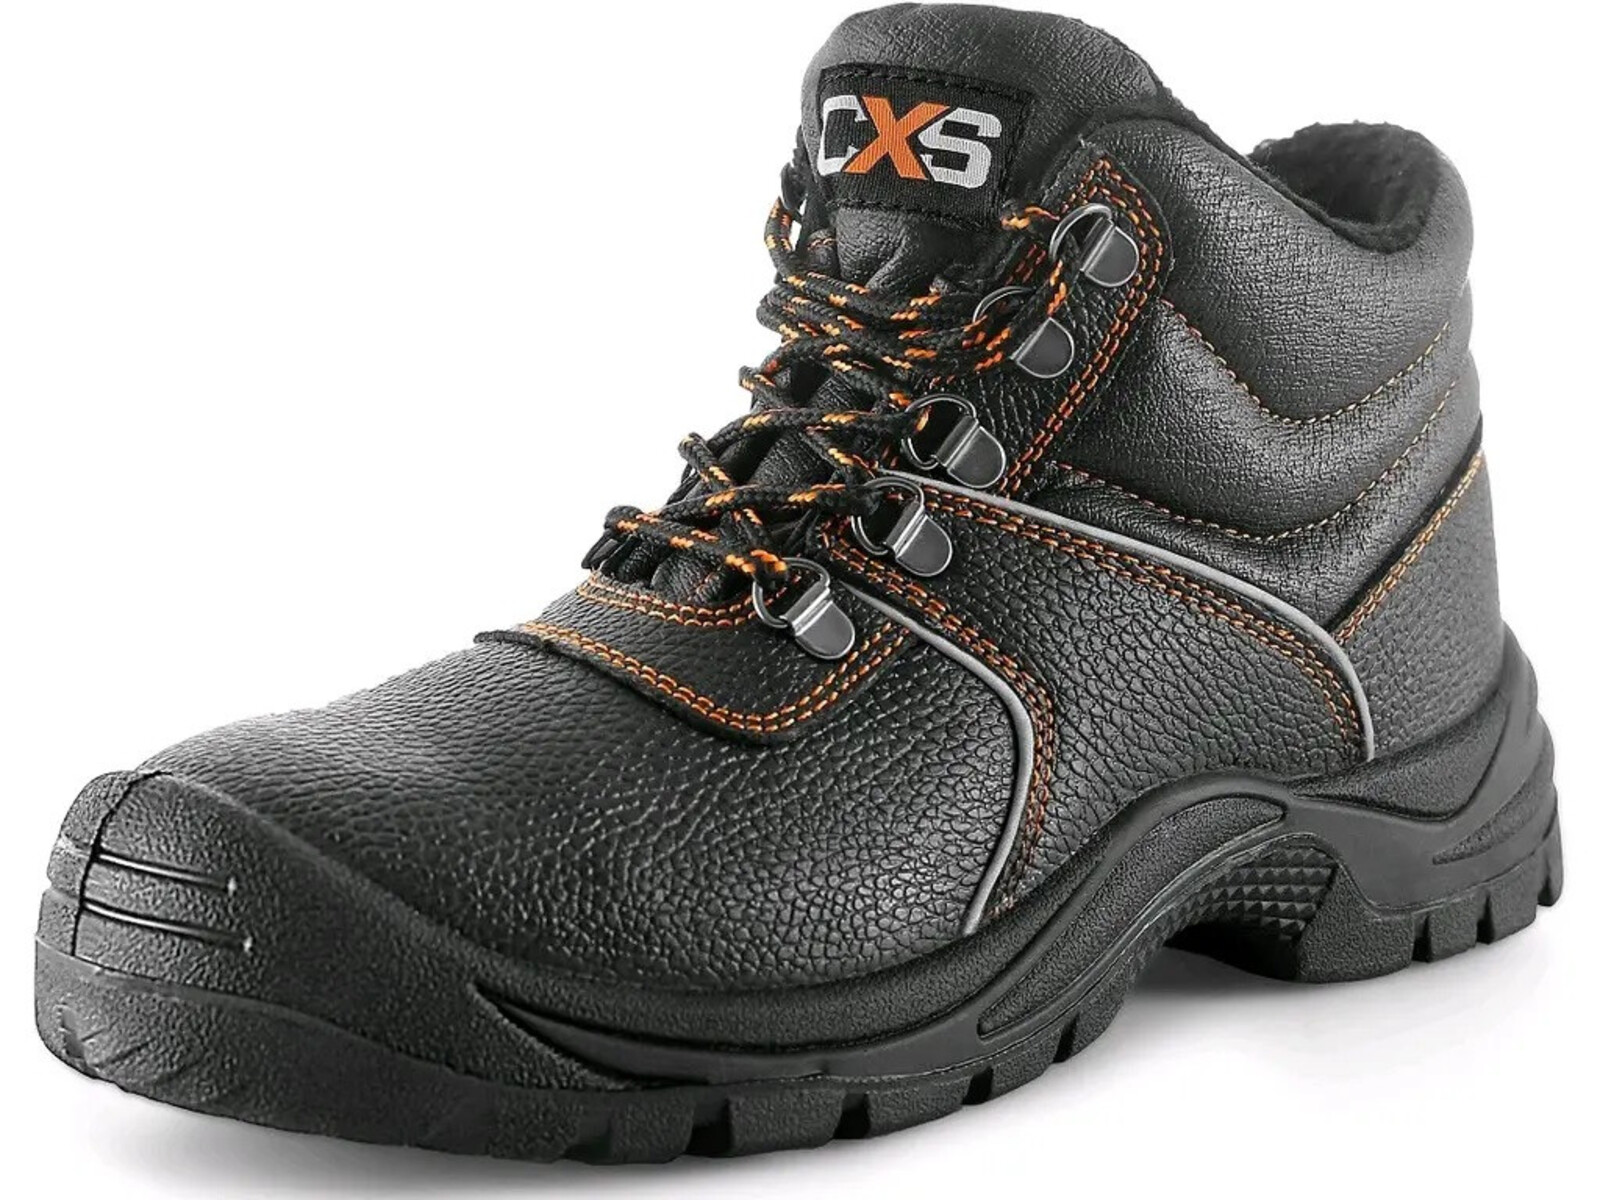 Zimná bezpečnostná členková obuv CXS Stone Apatit Winter S3 SRC - veľkosť: 35, farba: čierna/oranžová